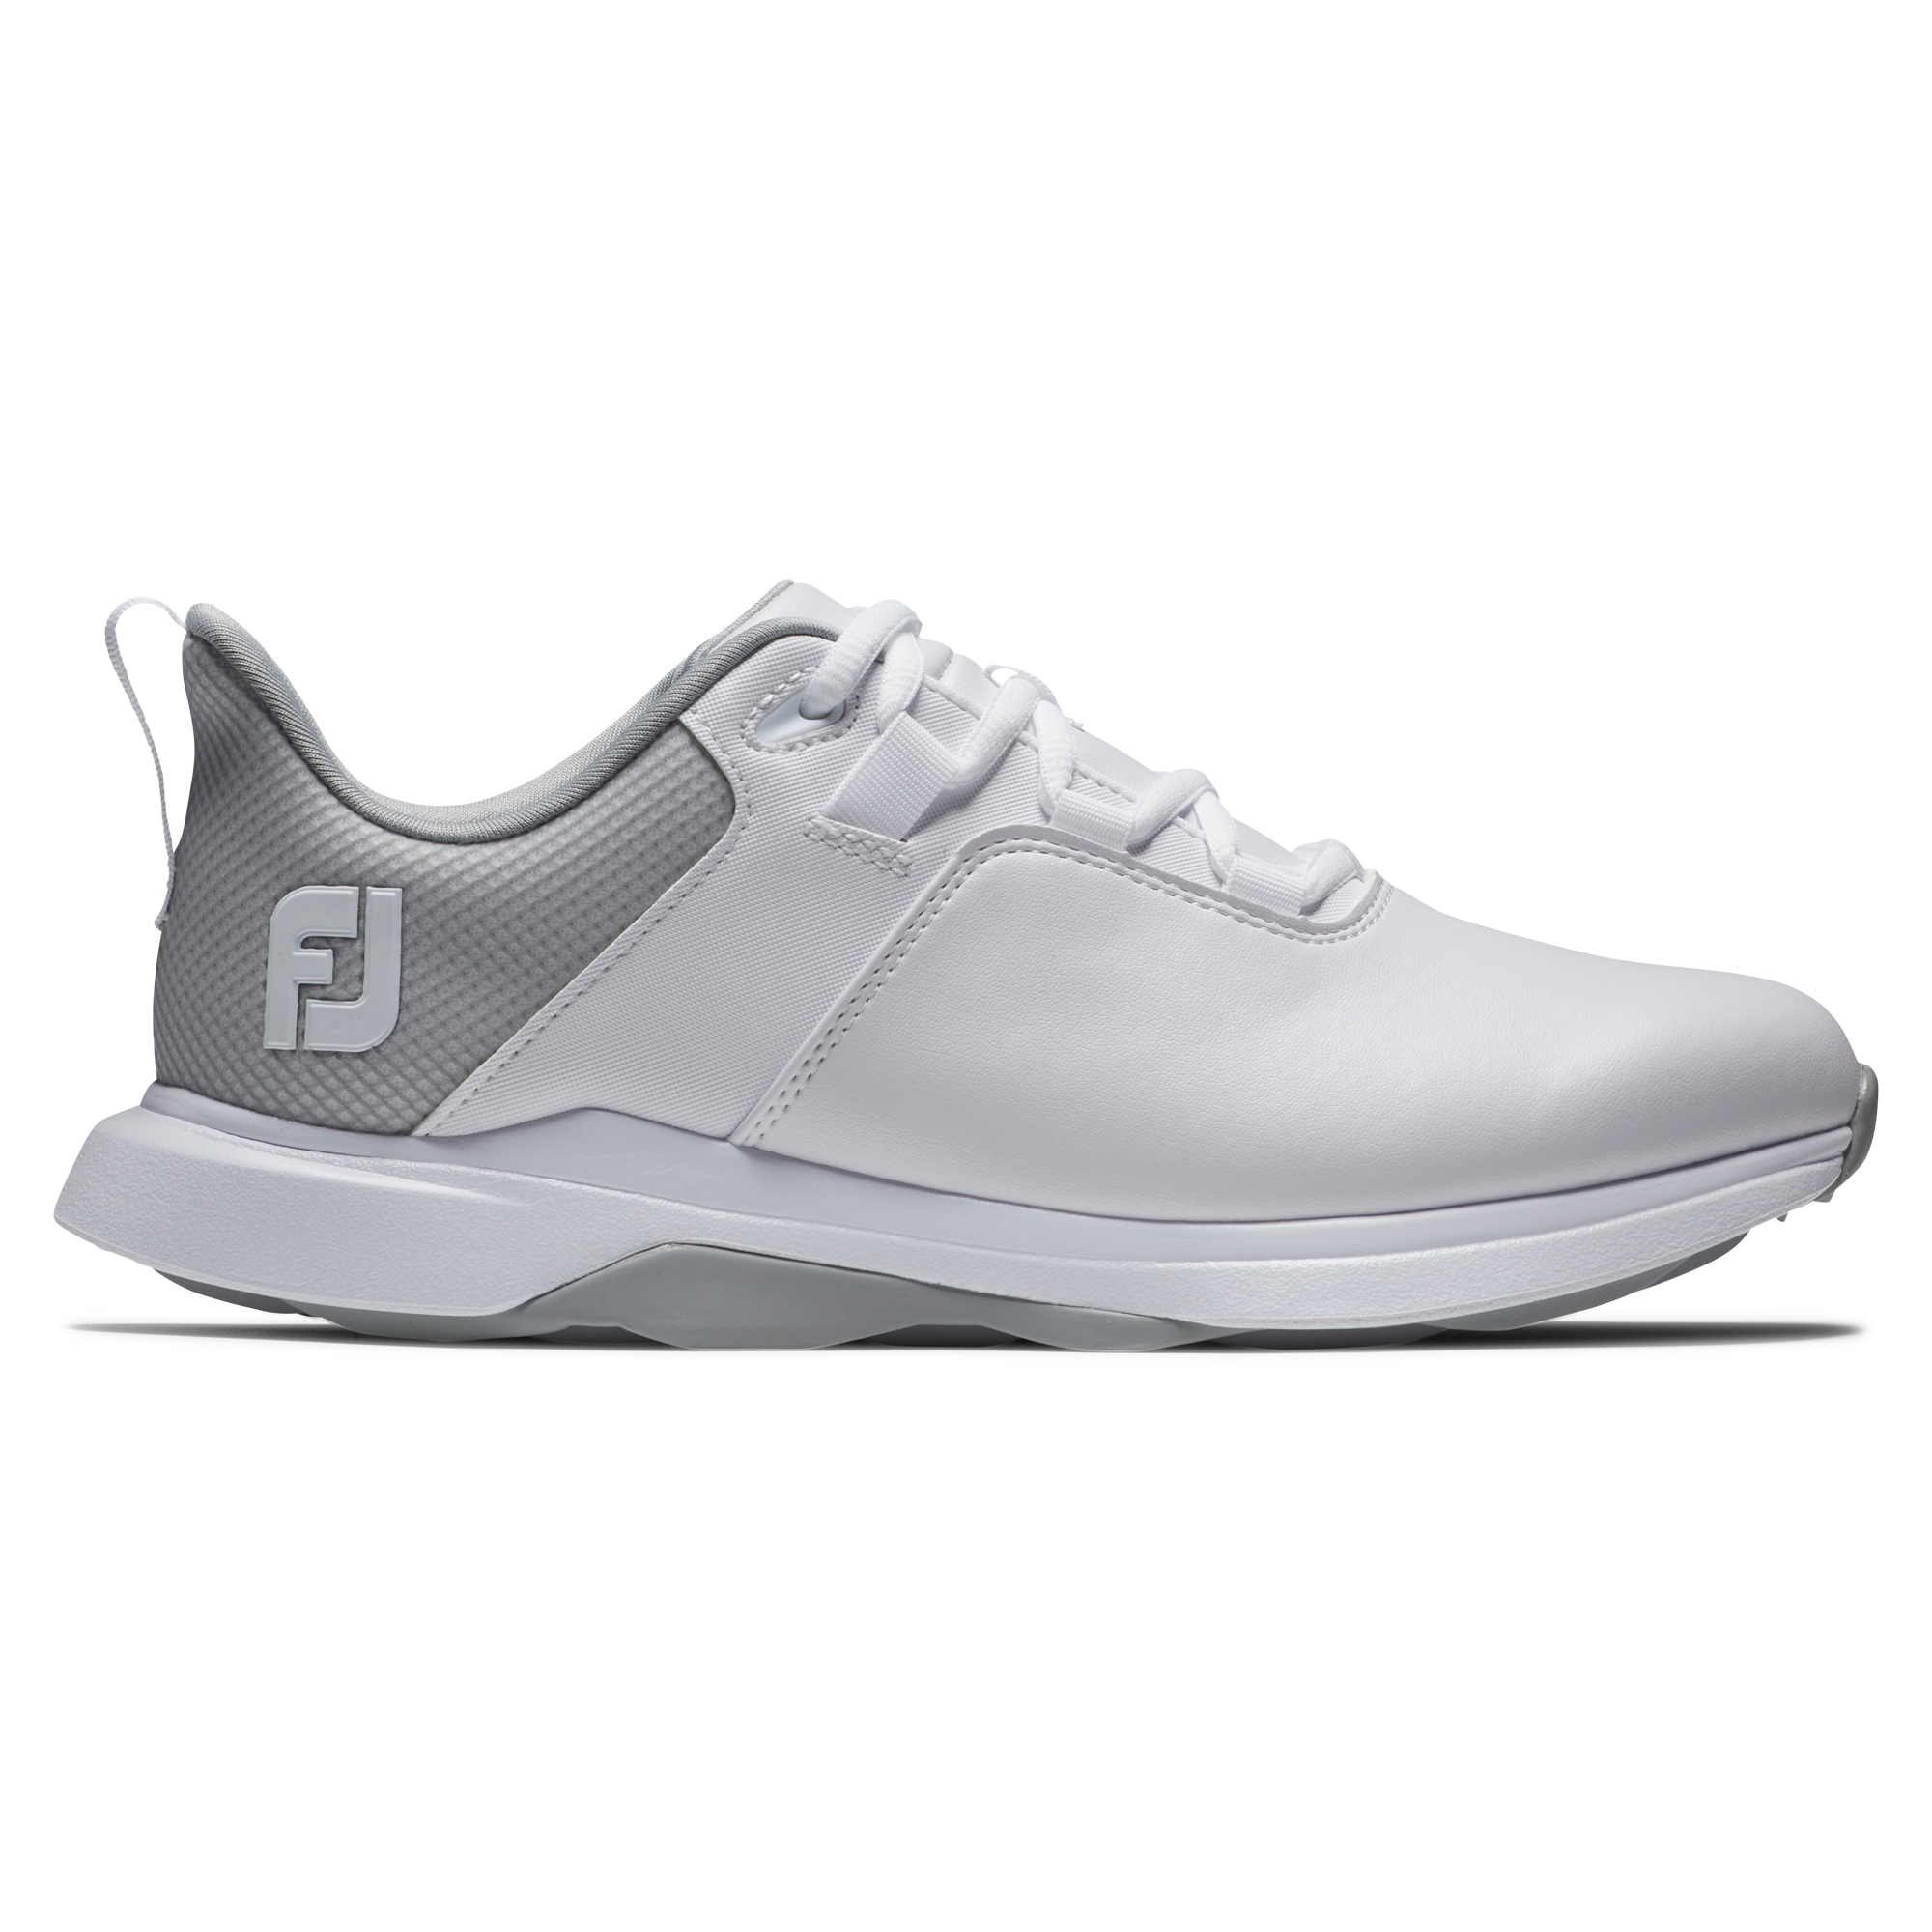 FootJoy ProLite dámské golfové boty, bílé, vel. 6,5 UK